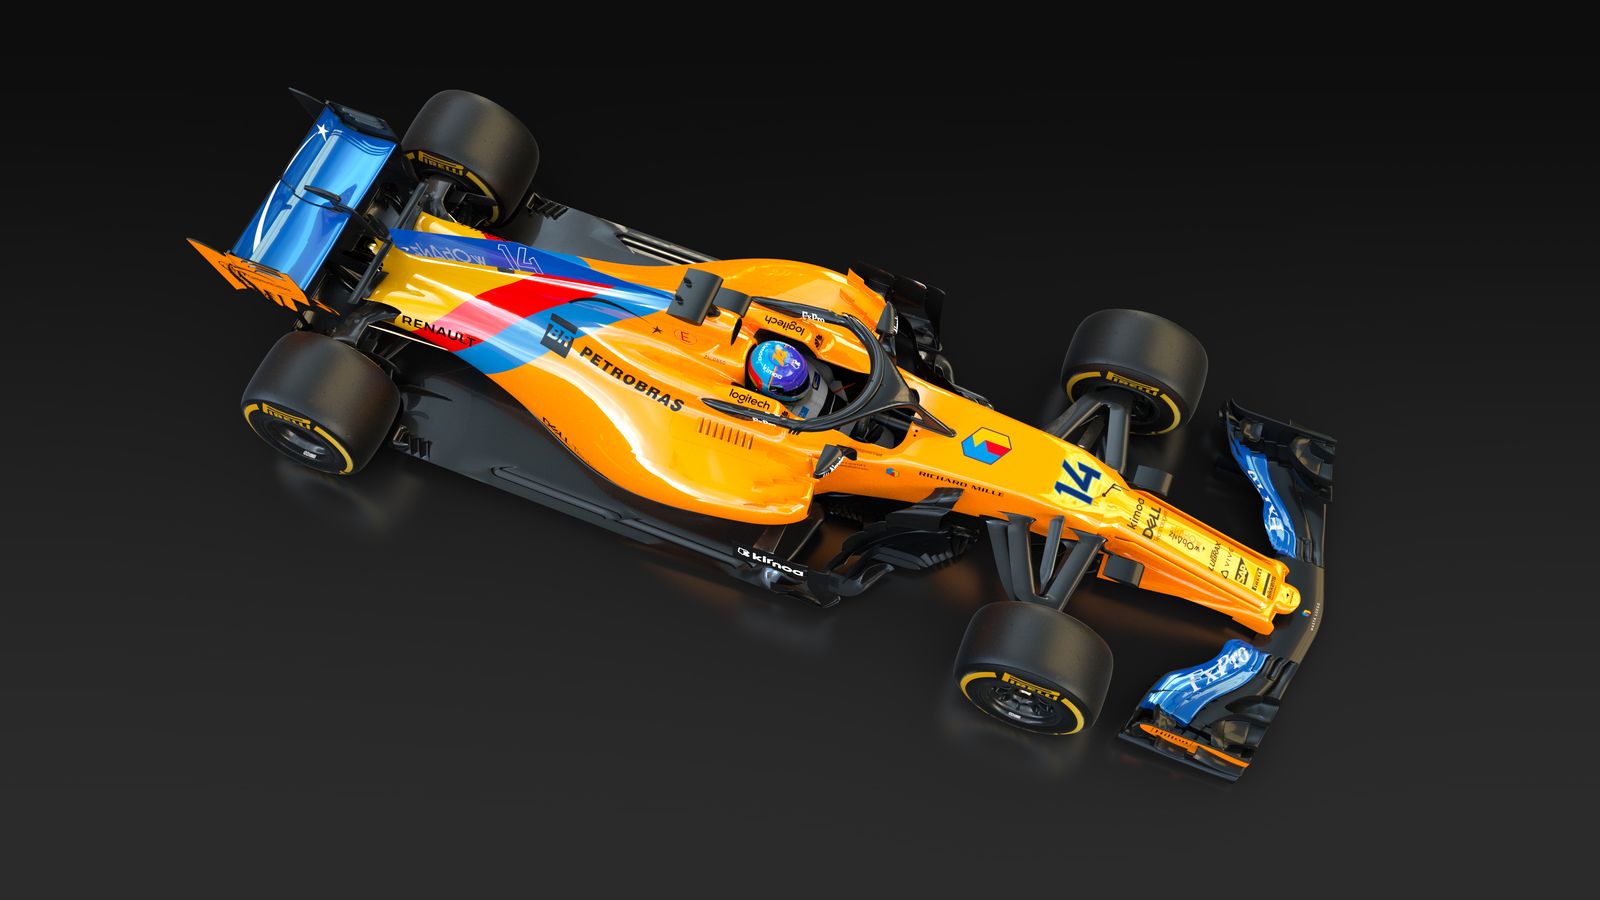 McLaren despide a Fernando Alonso con colores especiales en su coche